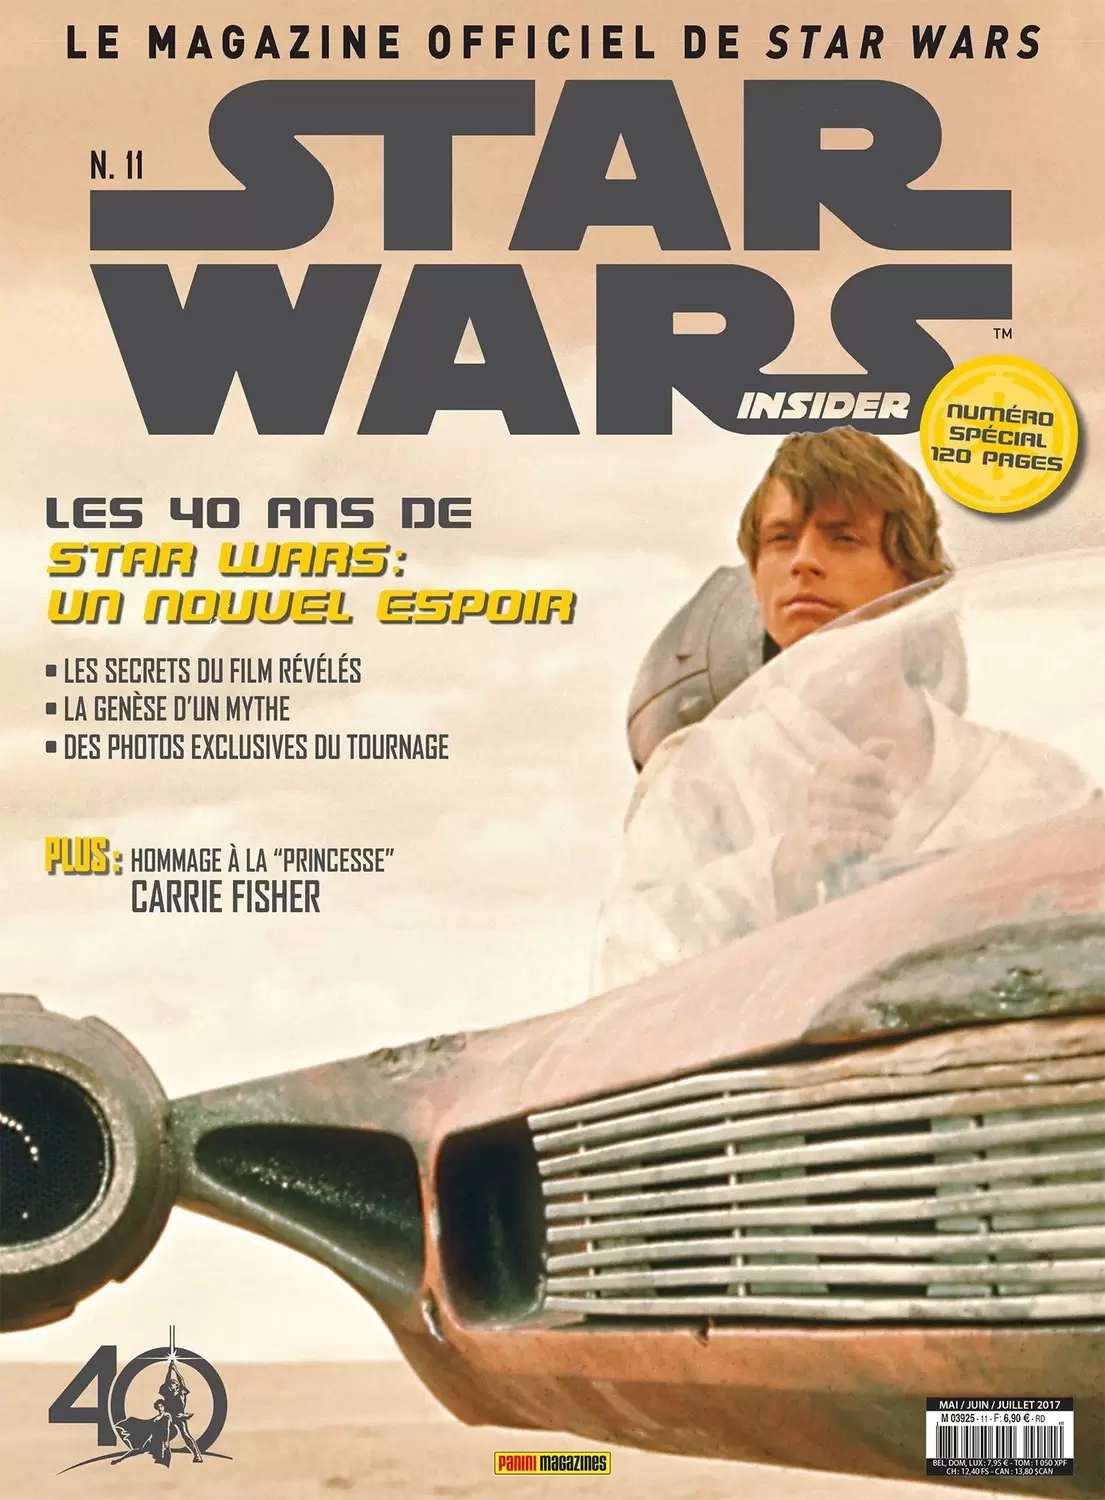 Star Wars Insider - Les 40 ans de Star Wars un nouvel espoir